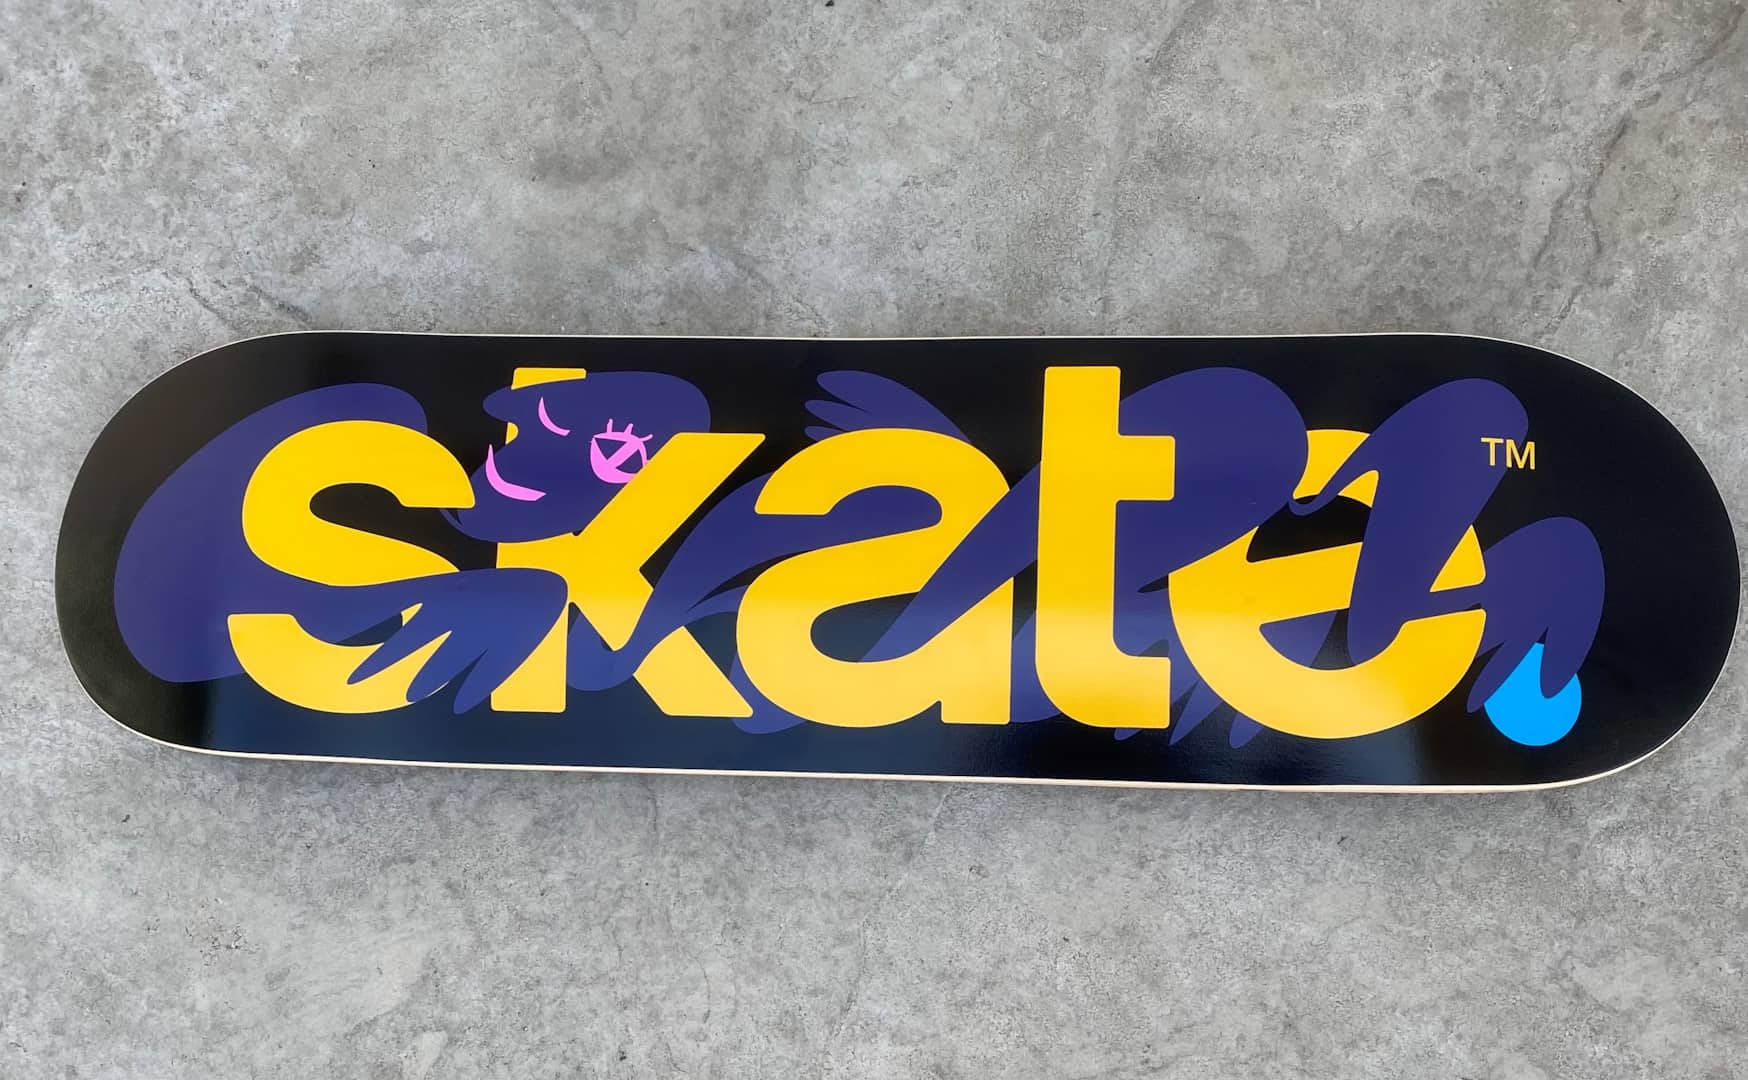 Skate 4 pode ganhar uma revelação completa em julho